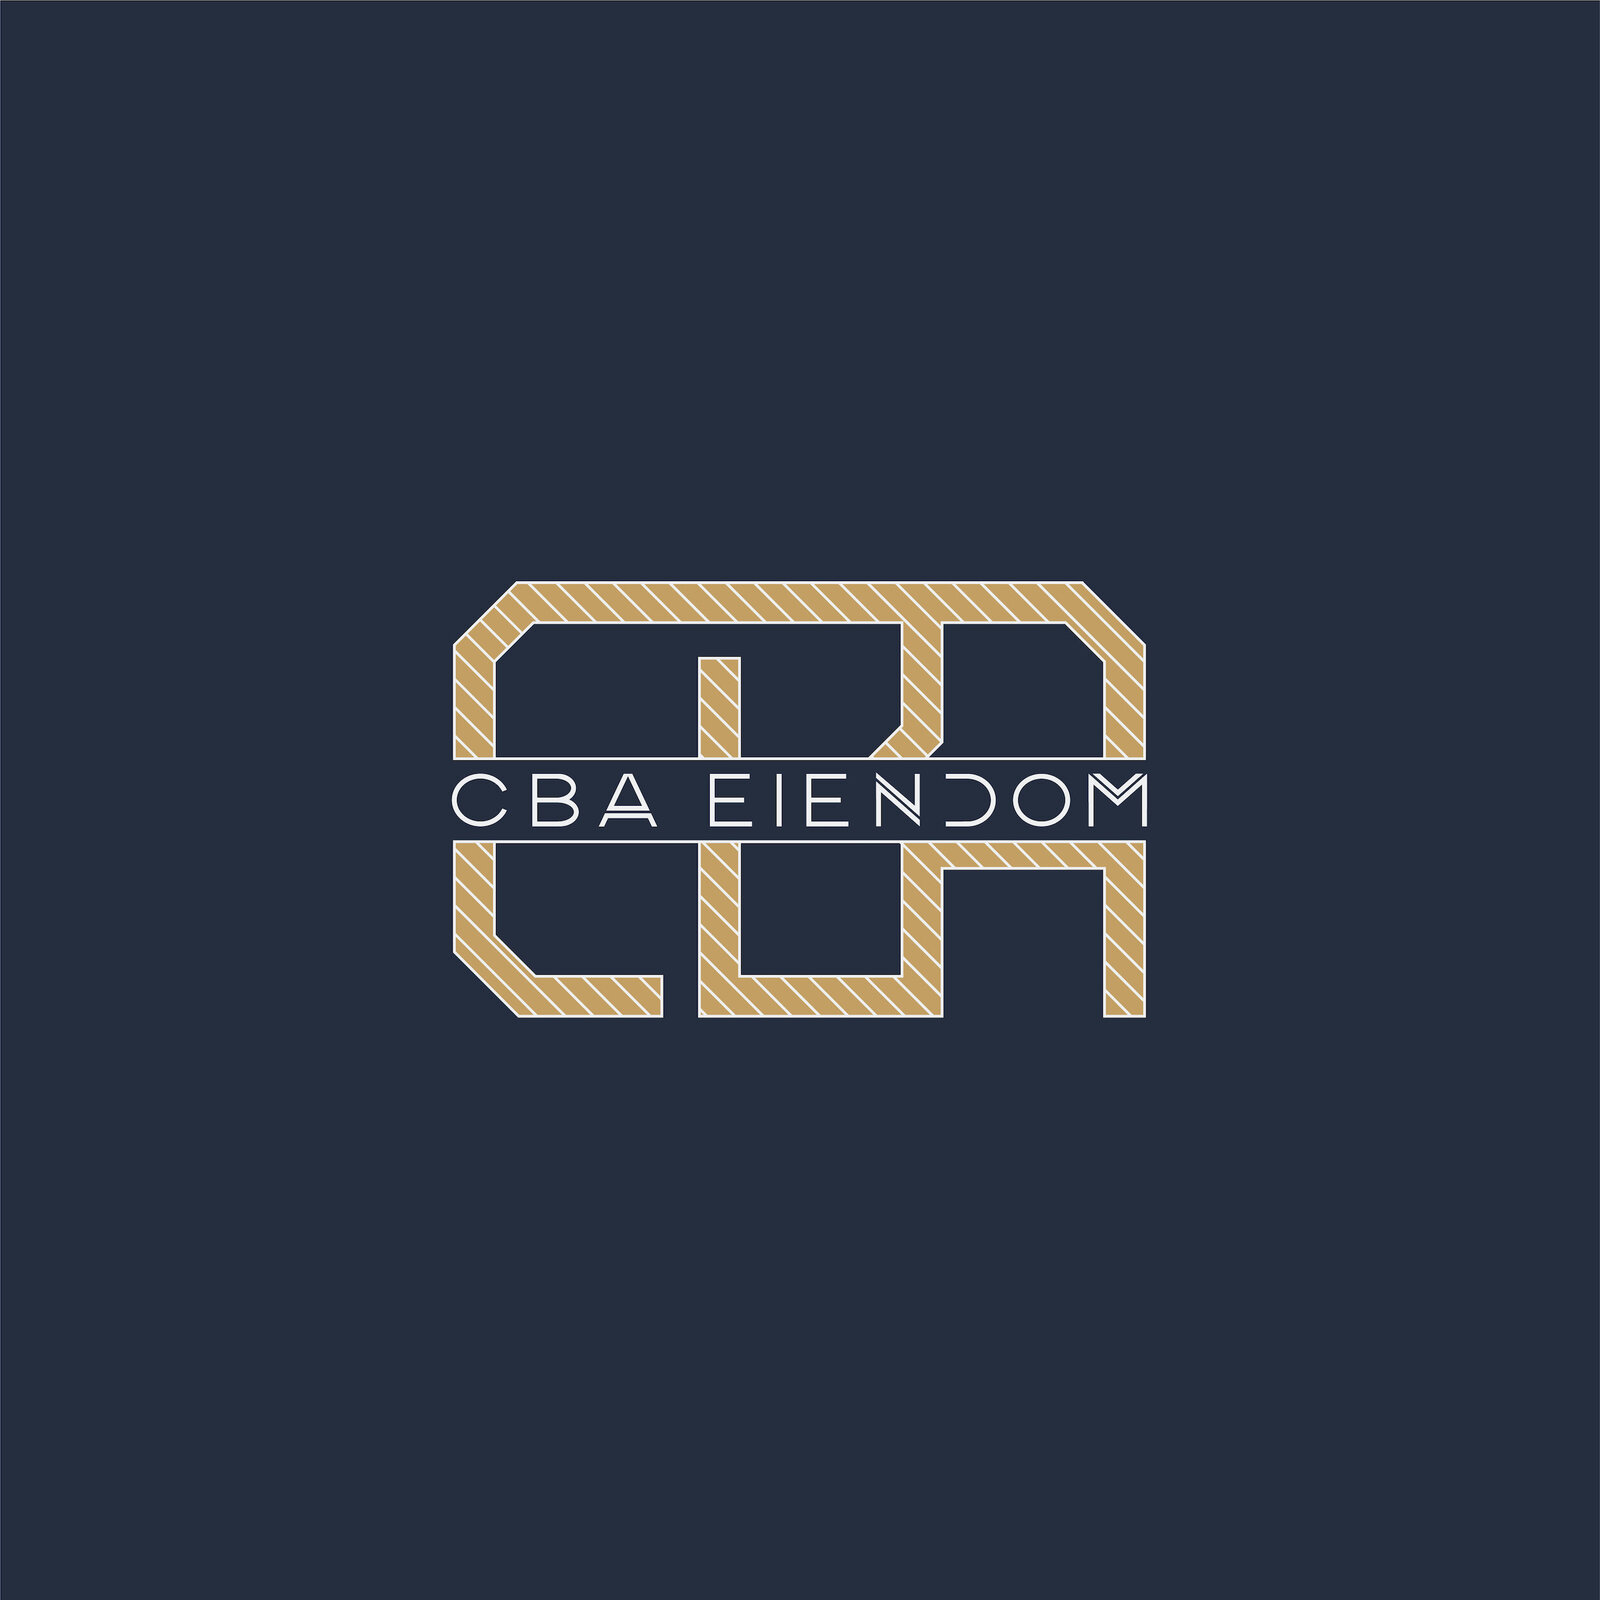 Persona-Vera-branding-CBA-Eiendom-12